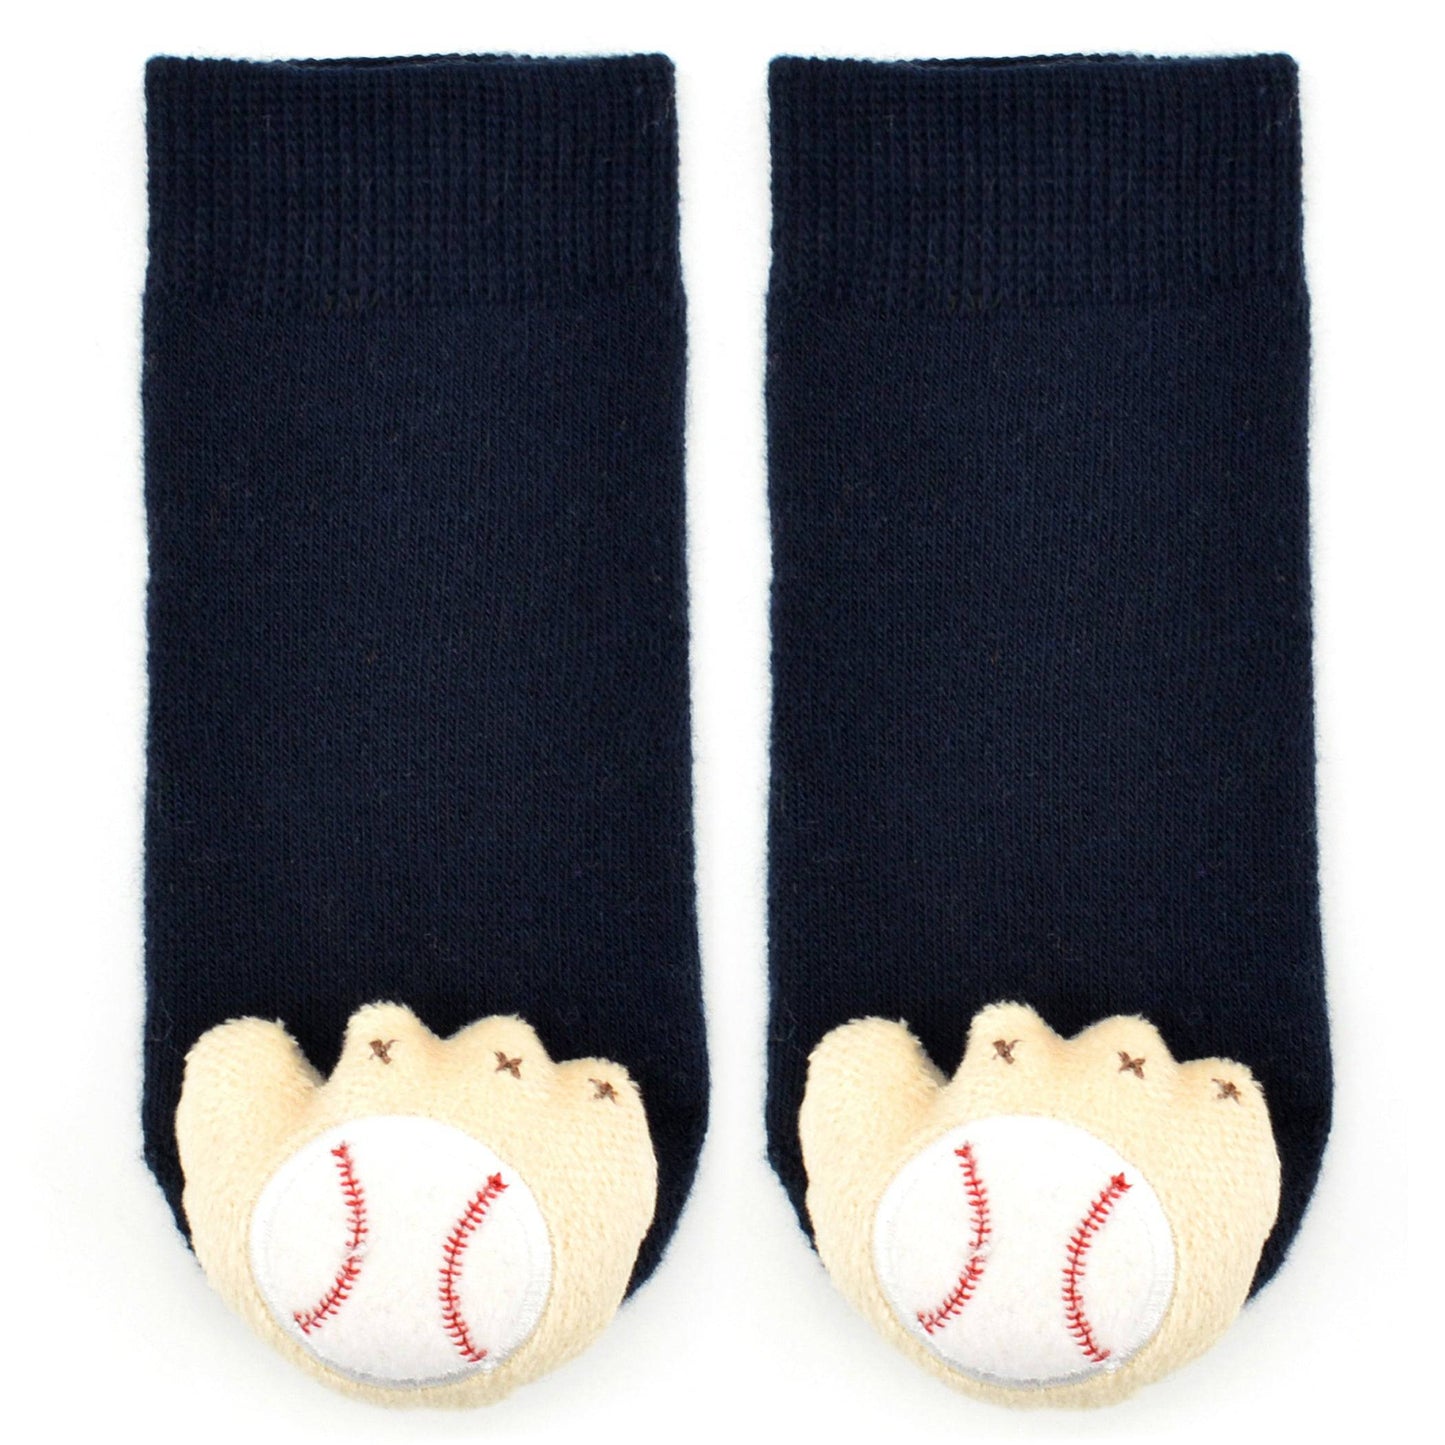 Boogie Toes -Baseball Mitt Rattle Socks